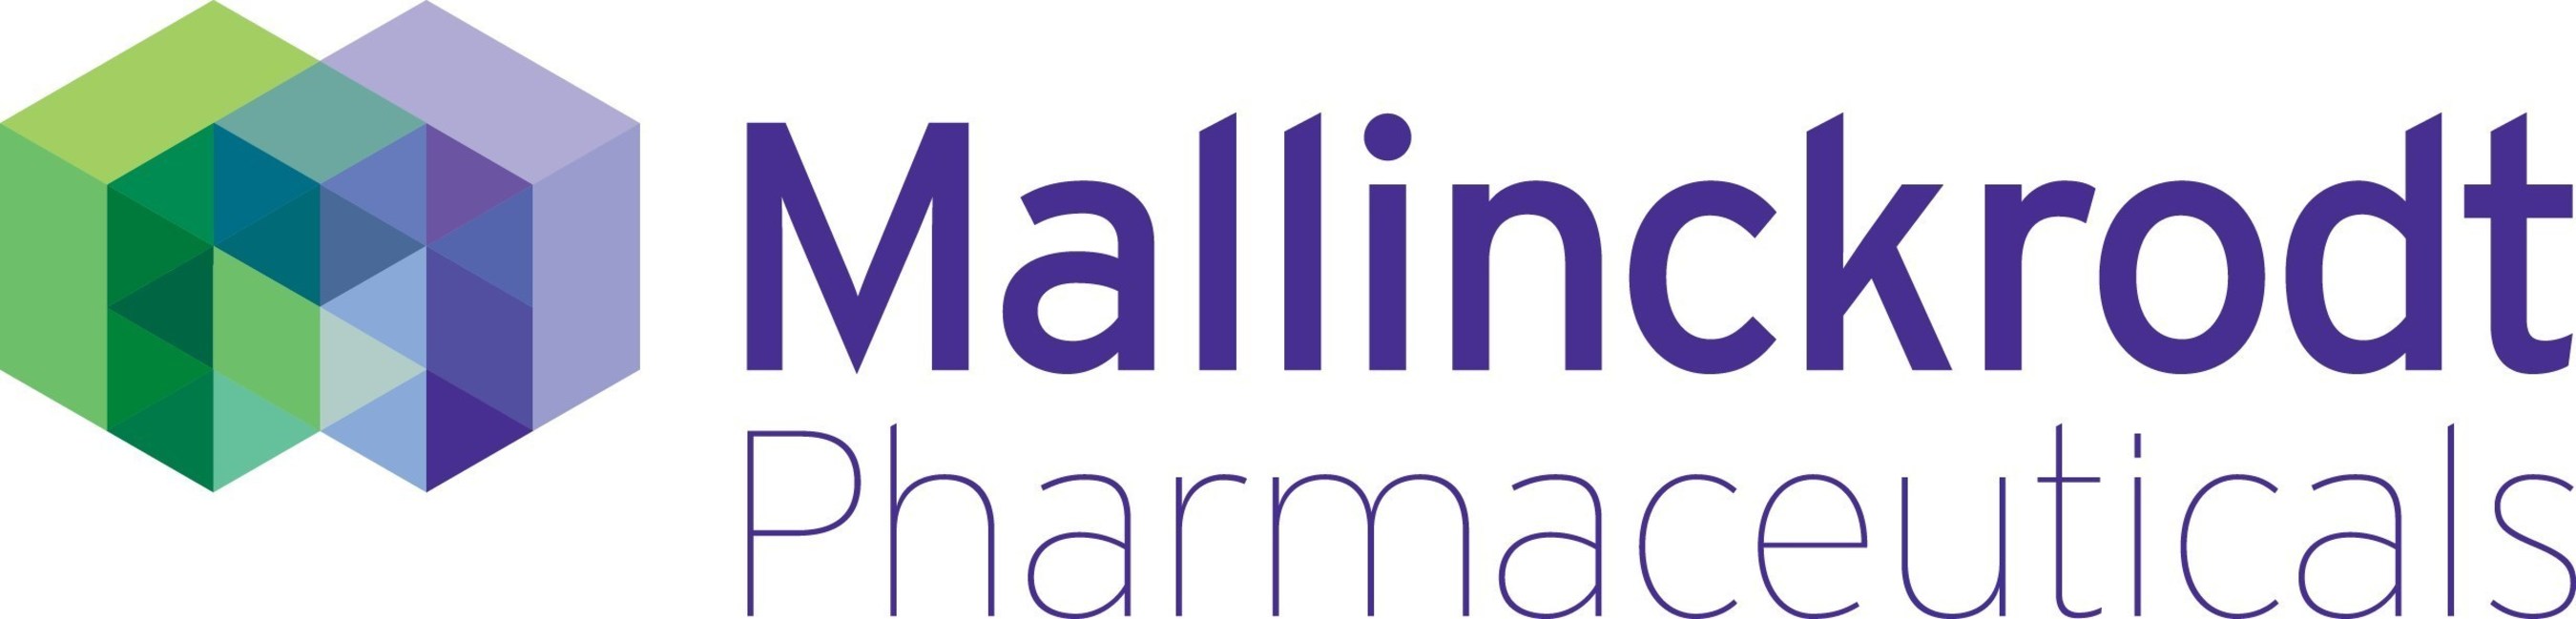 Mallinckrodt logo (PRNewsFoto/Mallinckrodt Pharmaceuticals)